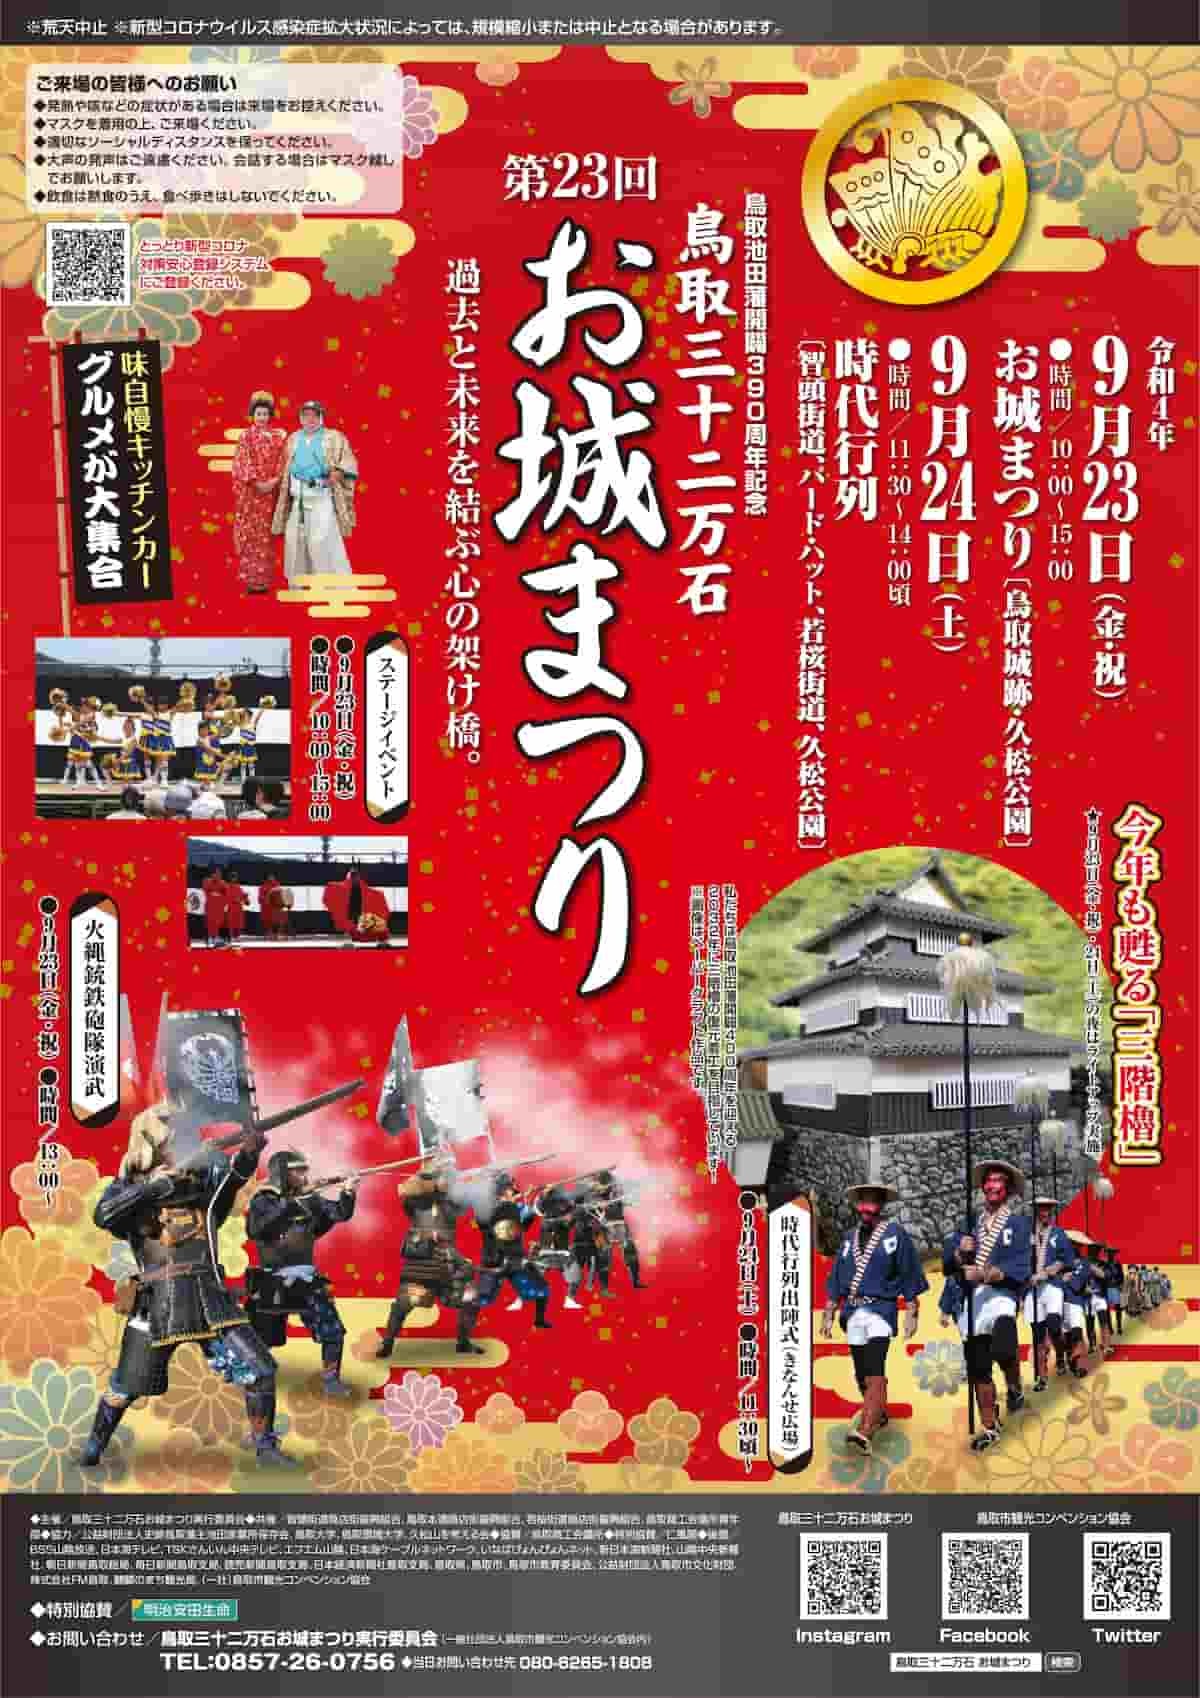 鳥取市で開催される「お城まつり」のポスター